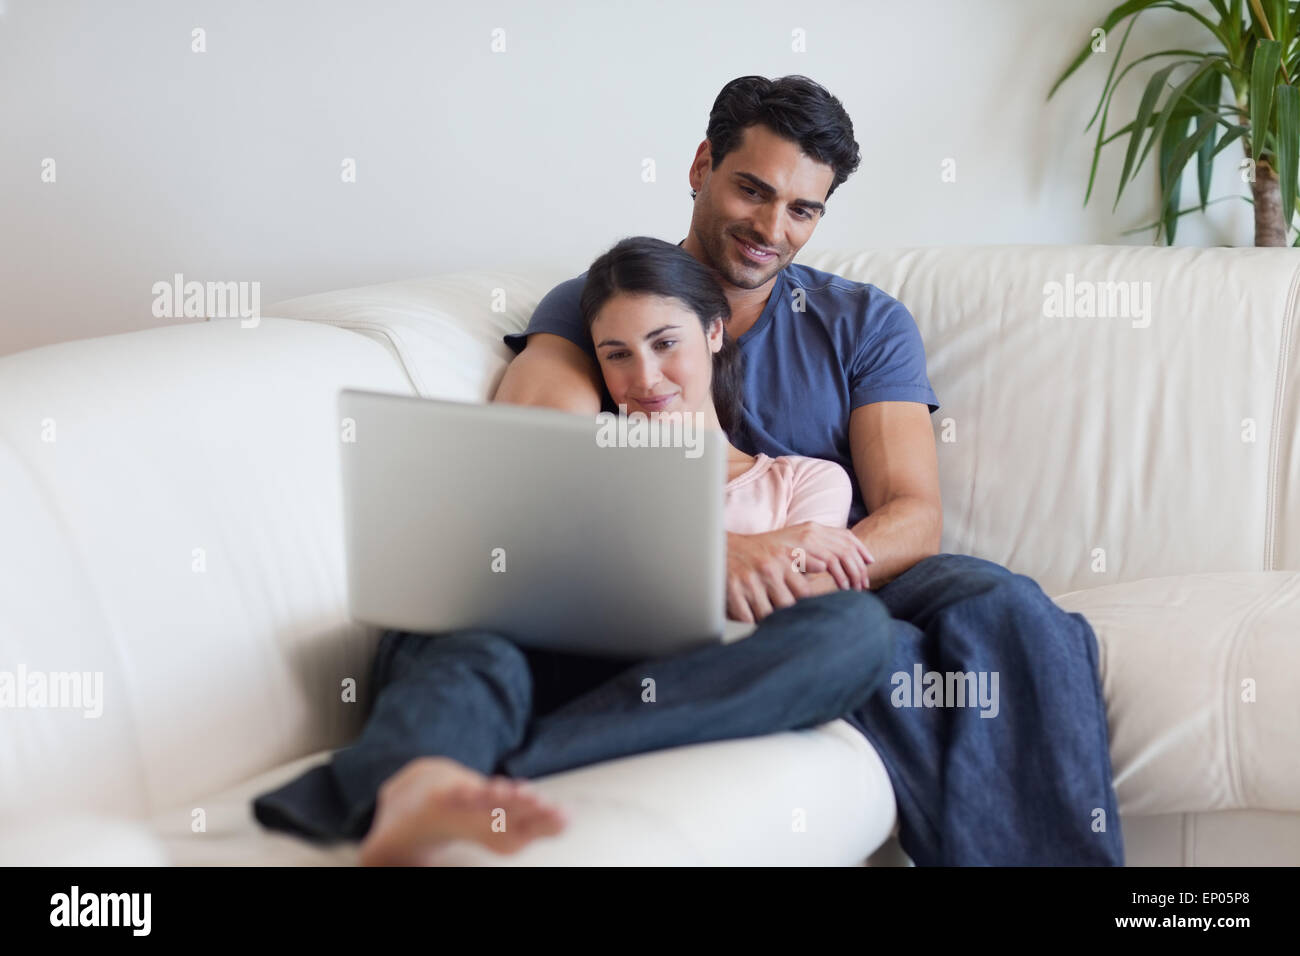 Сайт для просмотра вместе с другом. Человек в обнимку с ноутбука. В обнимку с телевизором. Пара смотрит телевизор в обнимку.